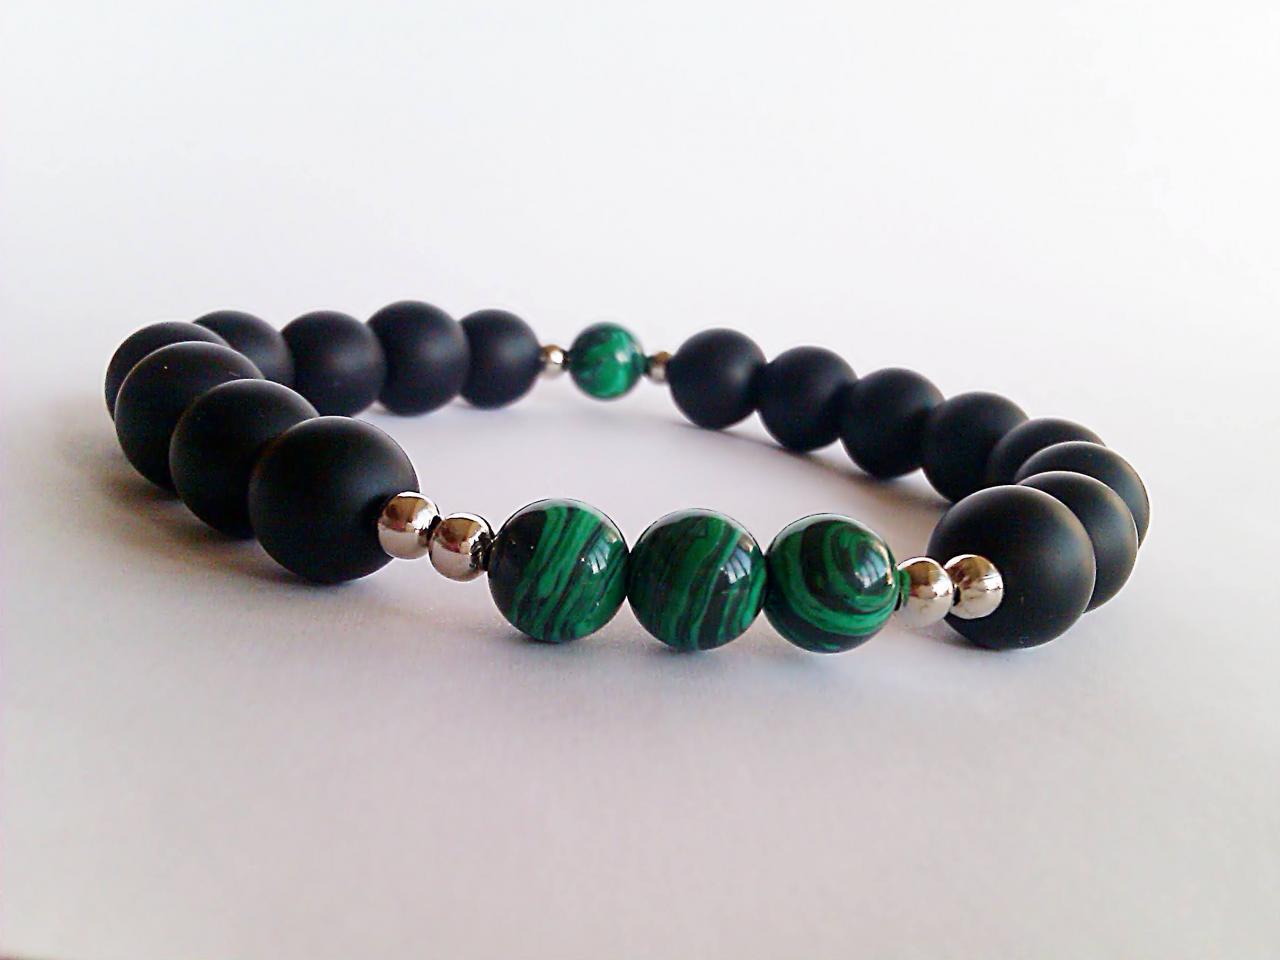 Black Onyx Mala Beads Bracelet, Malachite Bracelet, Green Black Stone Bracelet, Spiritual Bracelet, Chakra Bracelet, Protection Bracelet